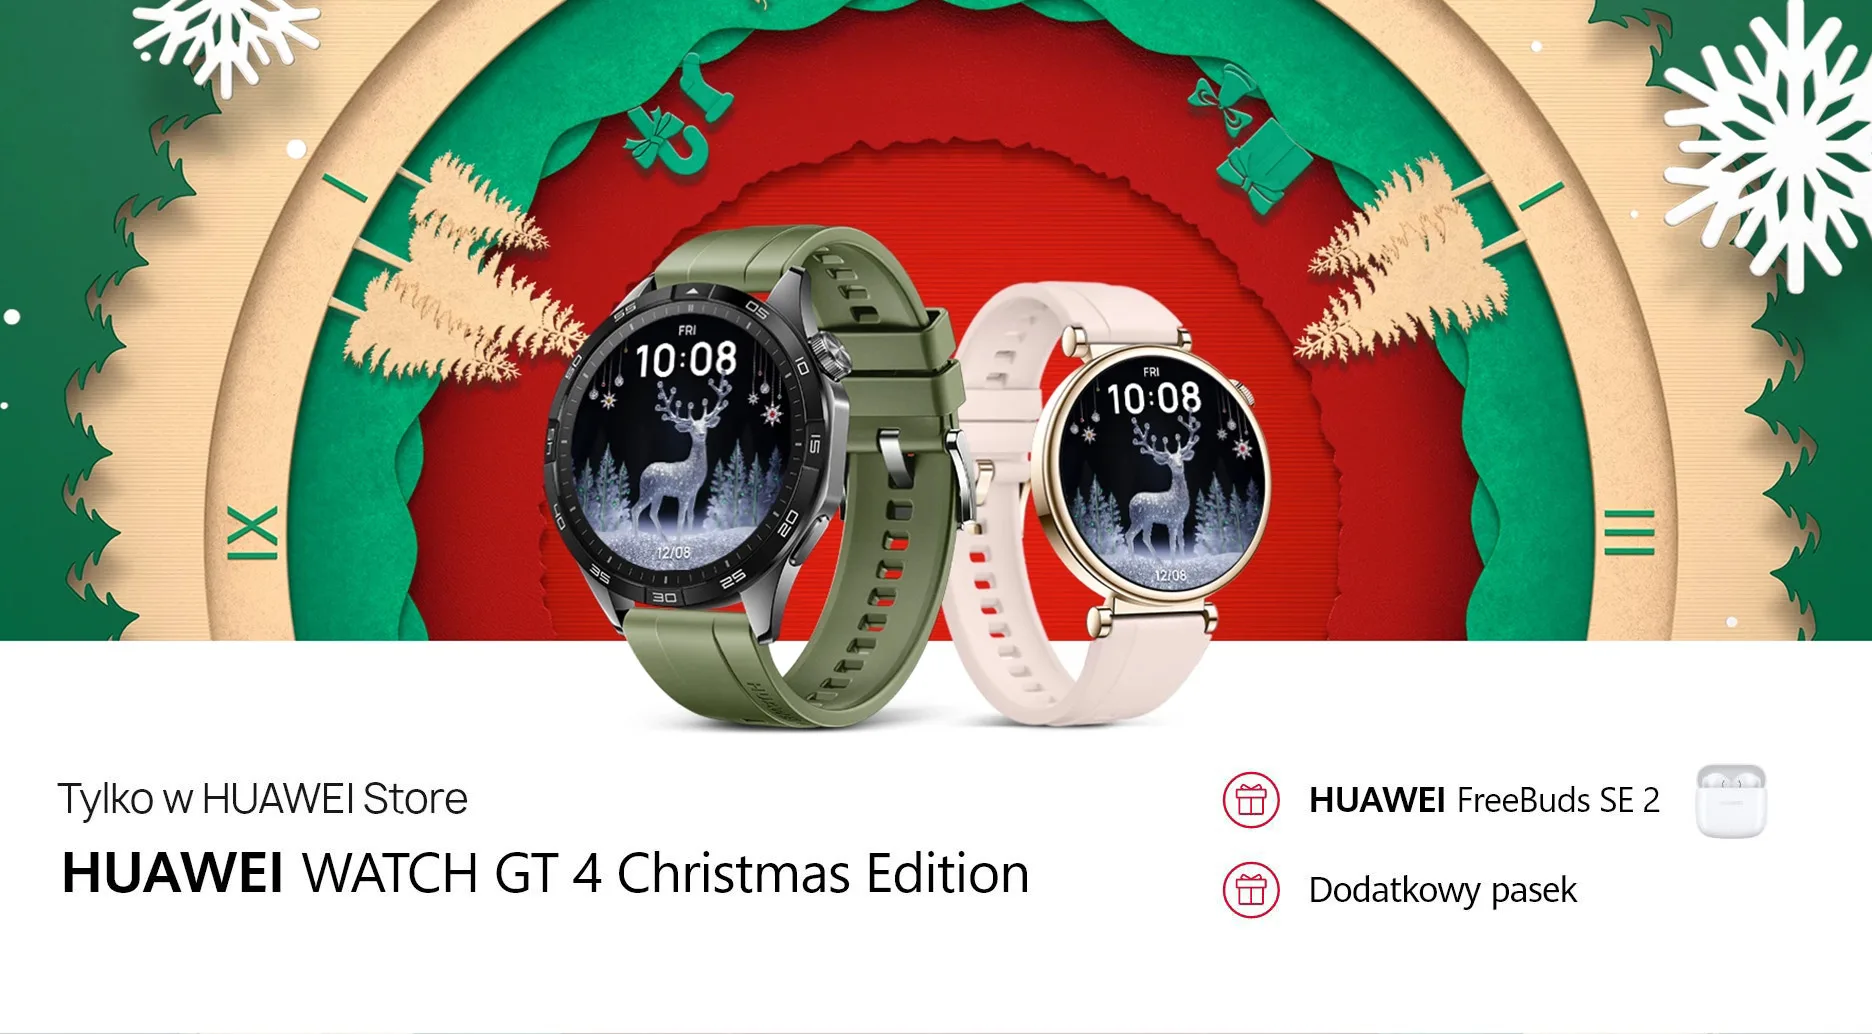 Tak tanio HUAWEI Watch GT 4 nie kupisz. Śpiesz się, bo warto!